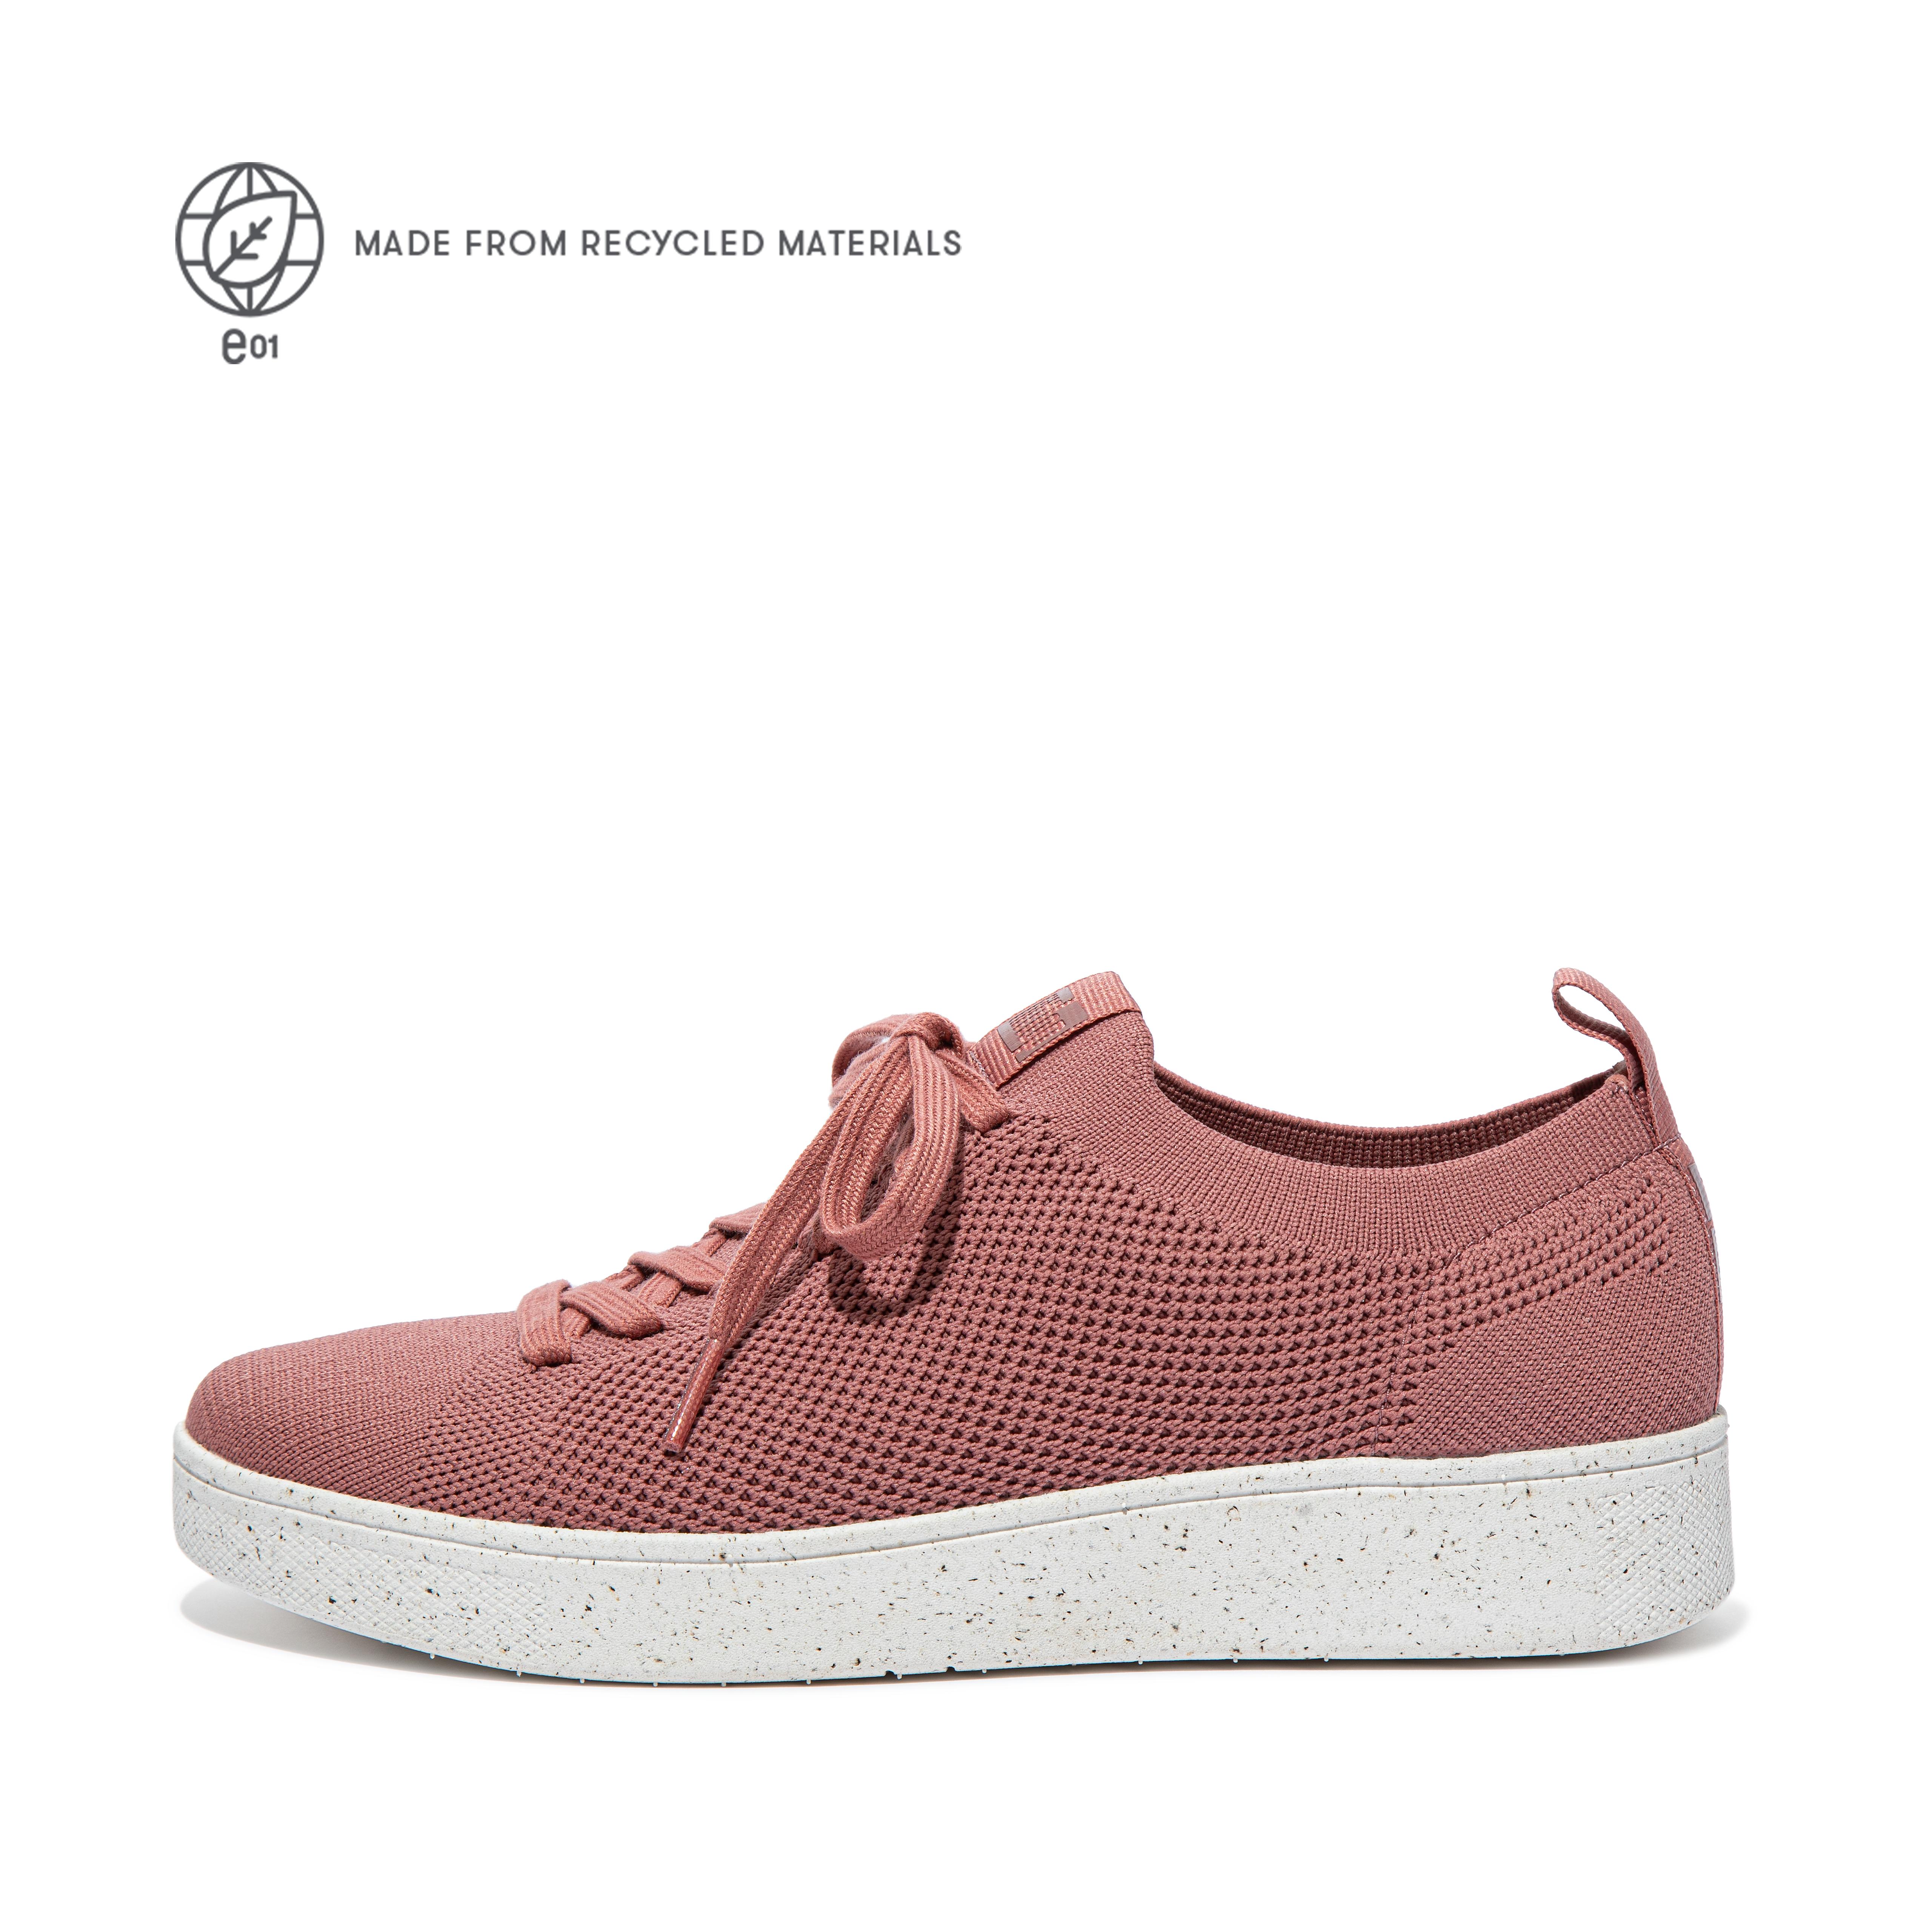 핏플랍 스니커즈 FitFlop RALLY e01 Multi-Knit Sneakers,Warm Rose